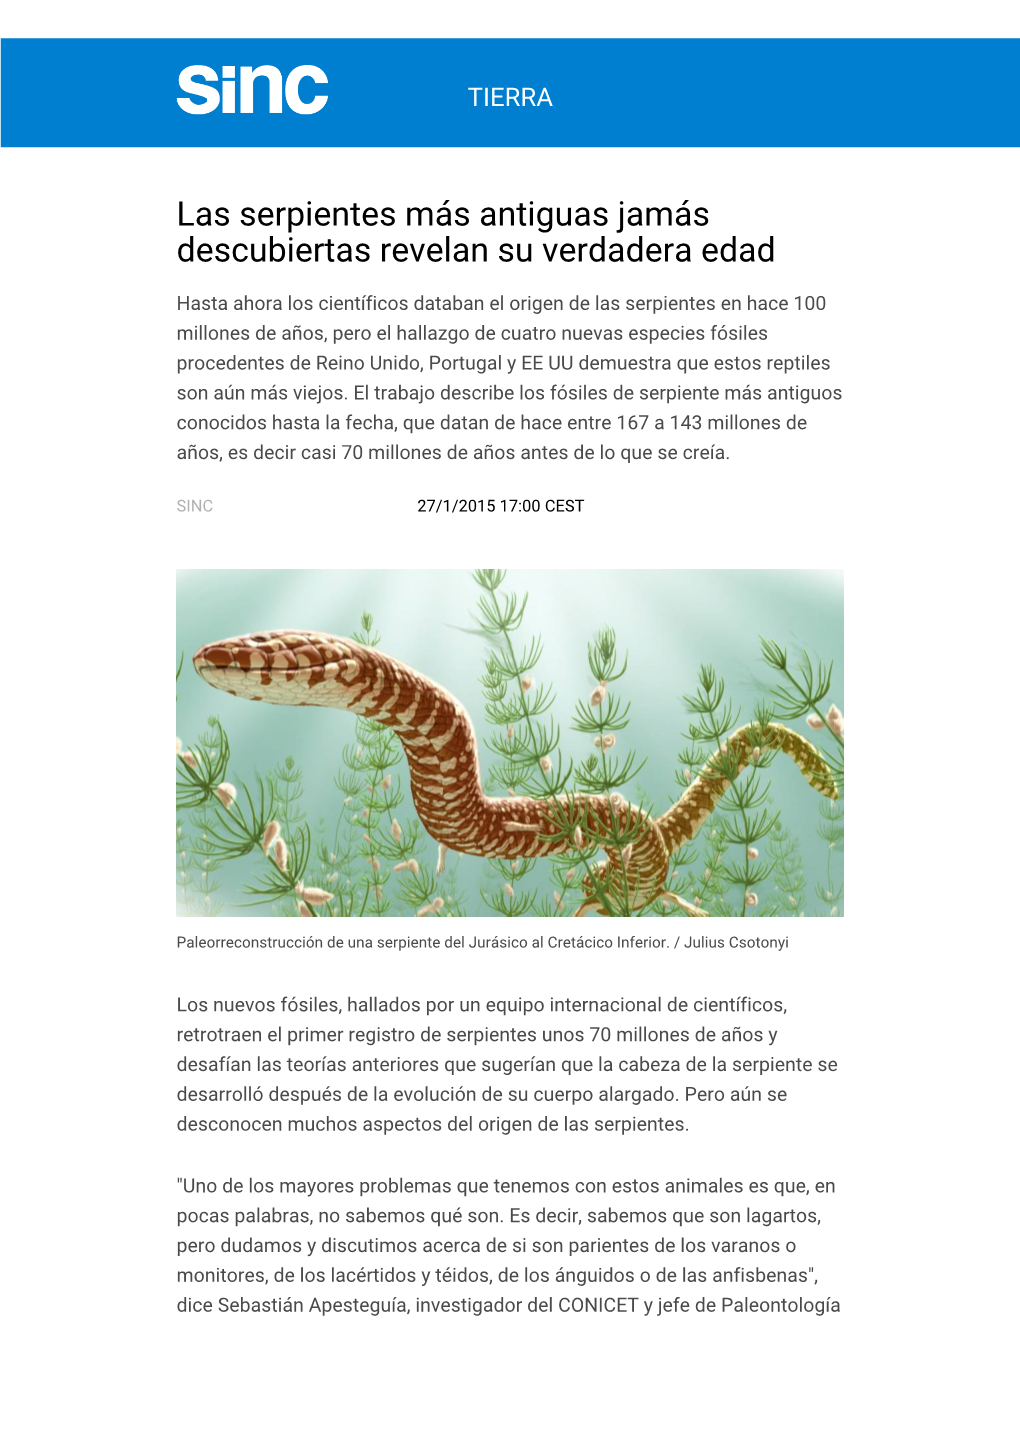 Las Serpientes Más Antiguas Jamás Descubiertas Revelan Su Verdadera Edad